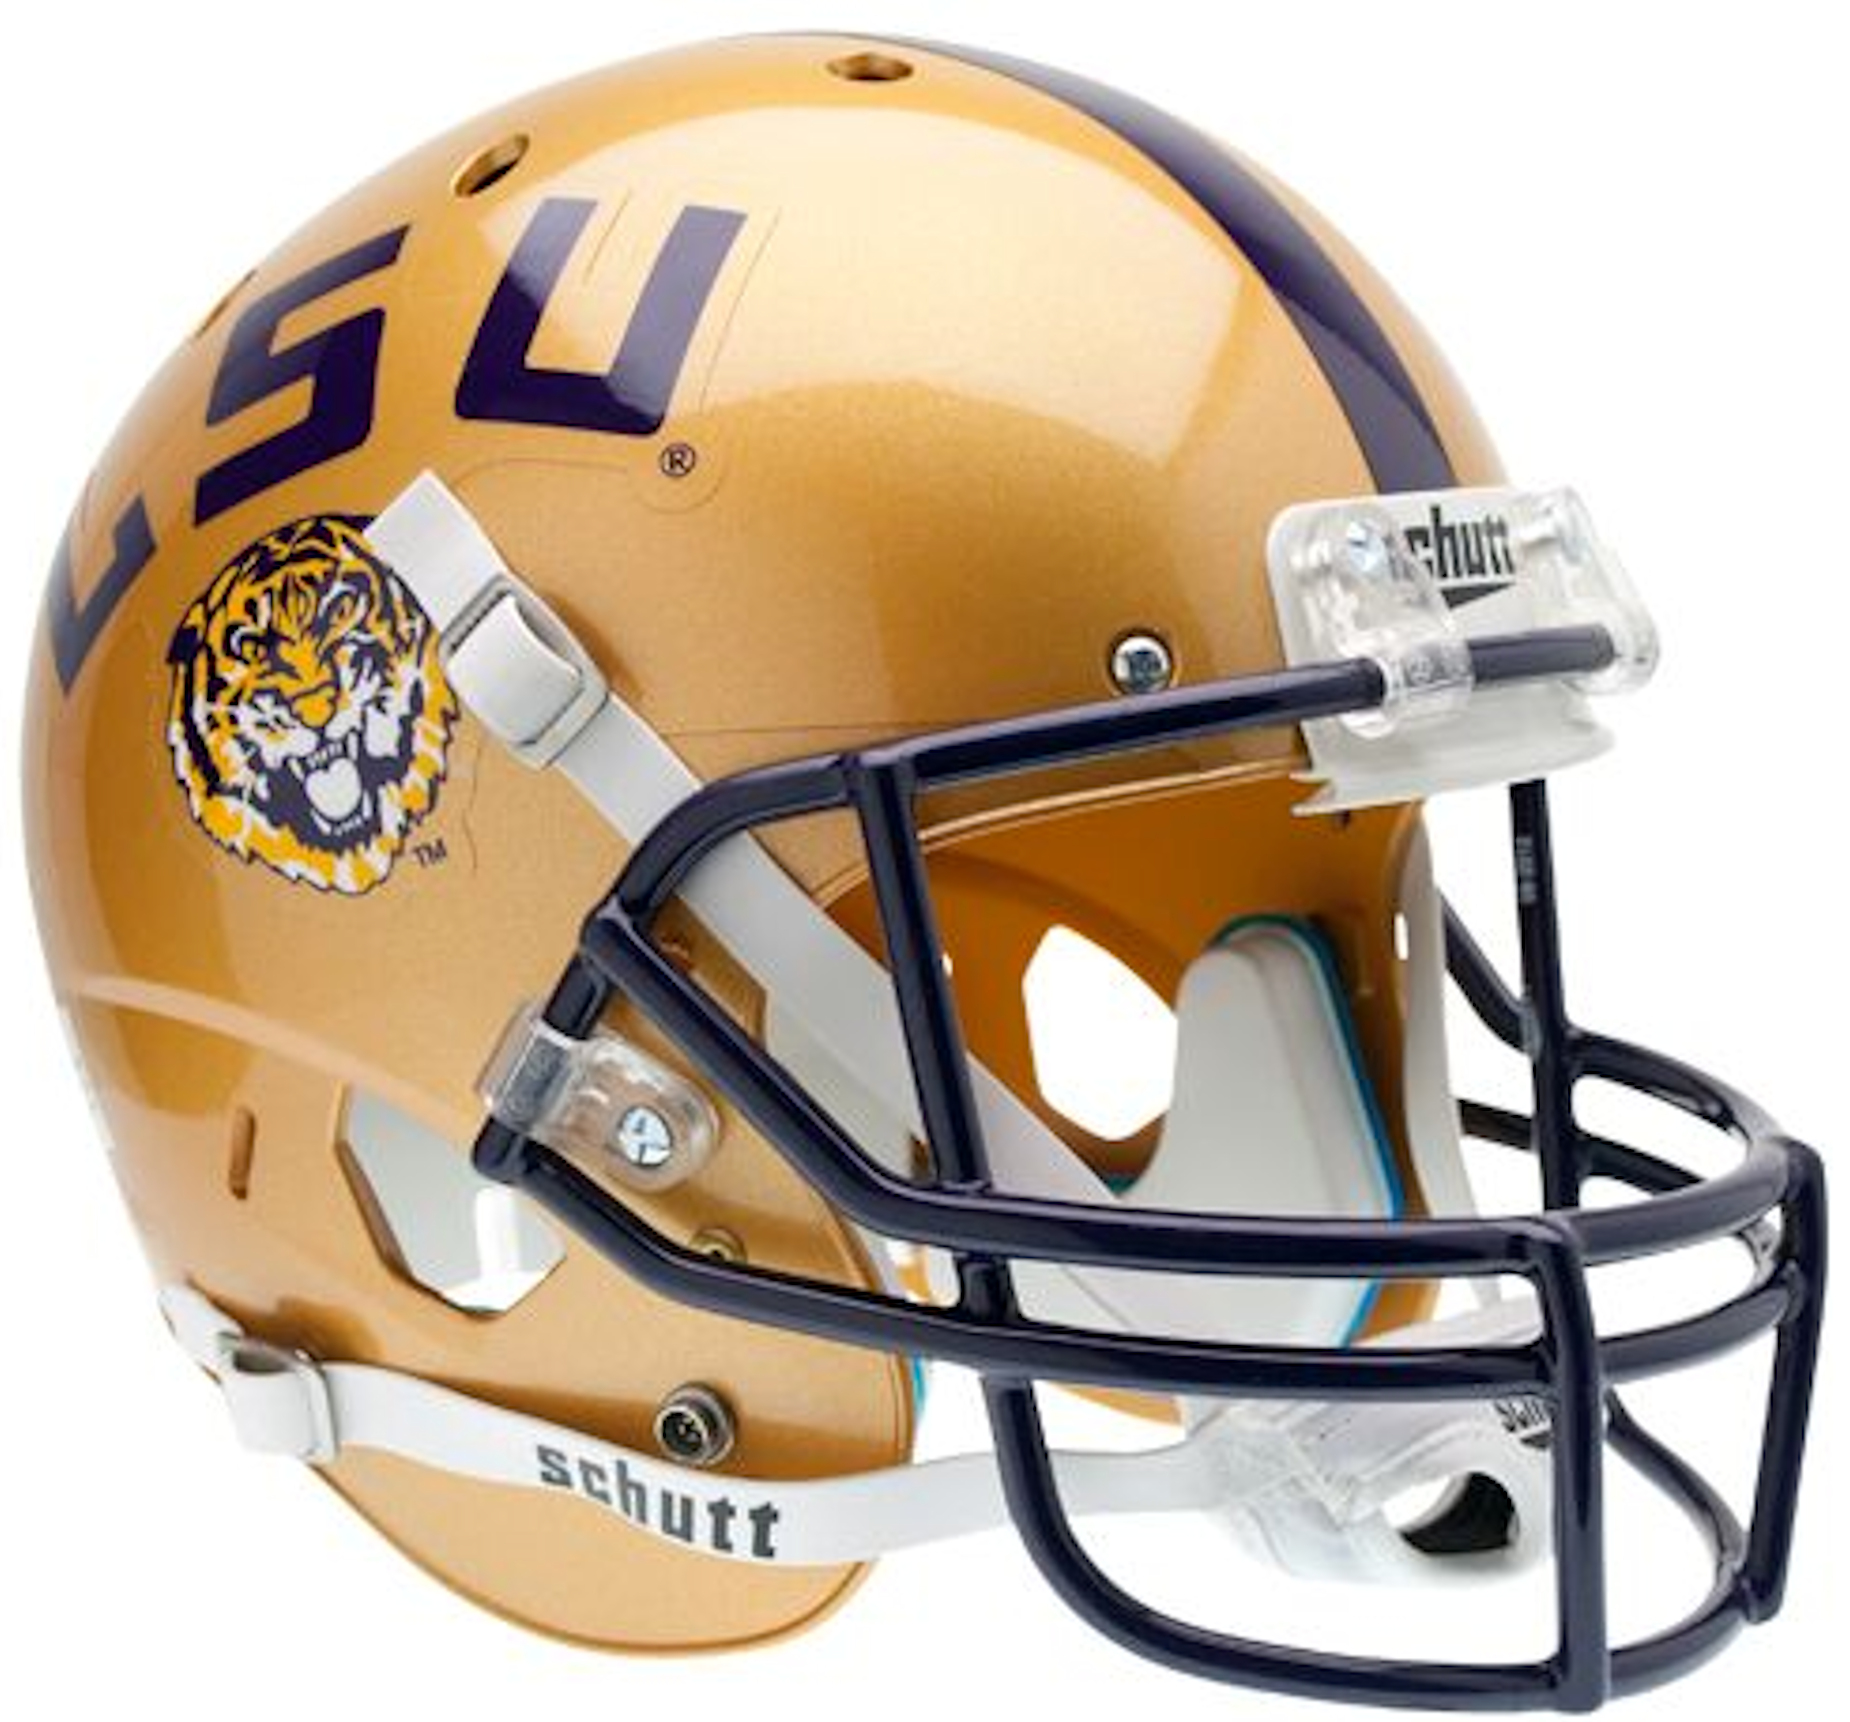 LSU Tigers Full XP Replica Football Helmet Schutt <B>Gold</B>